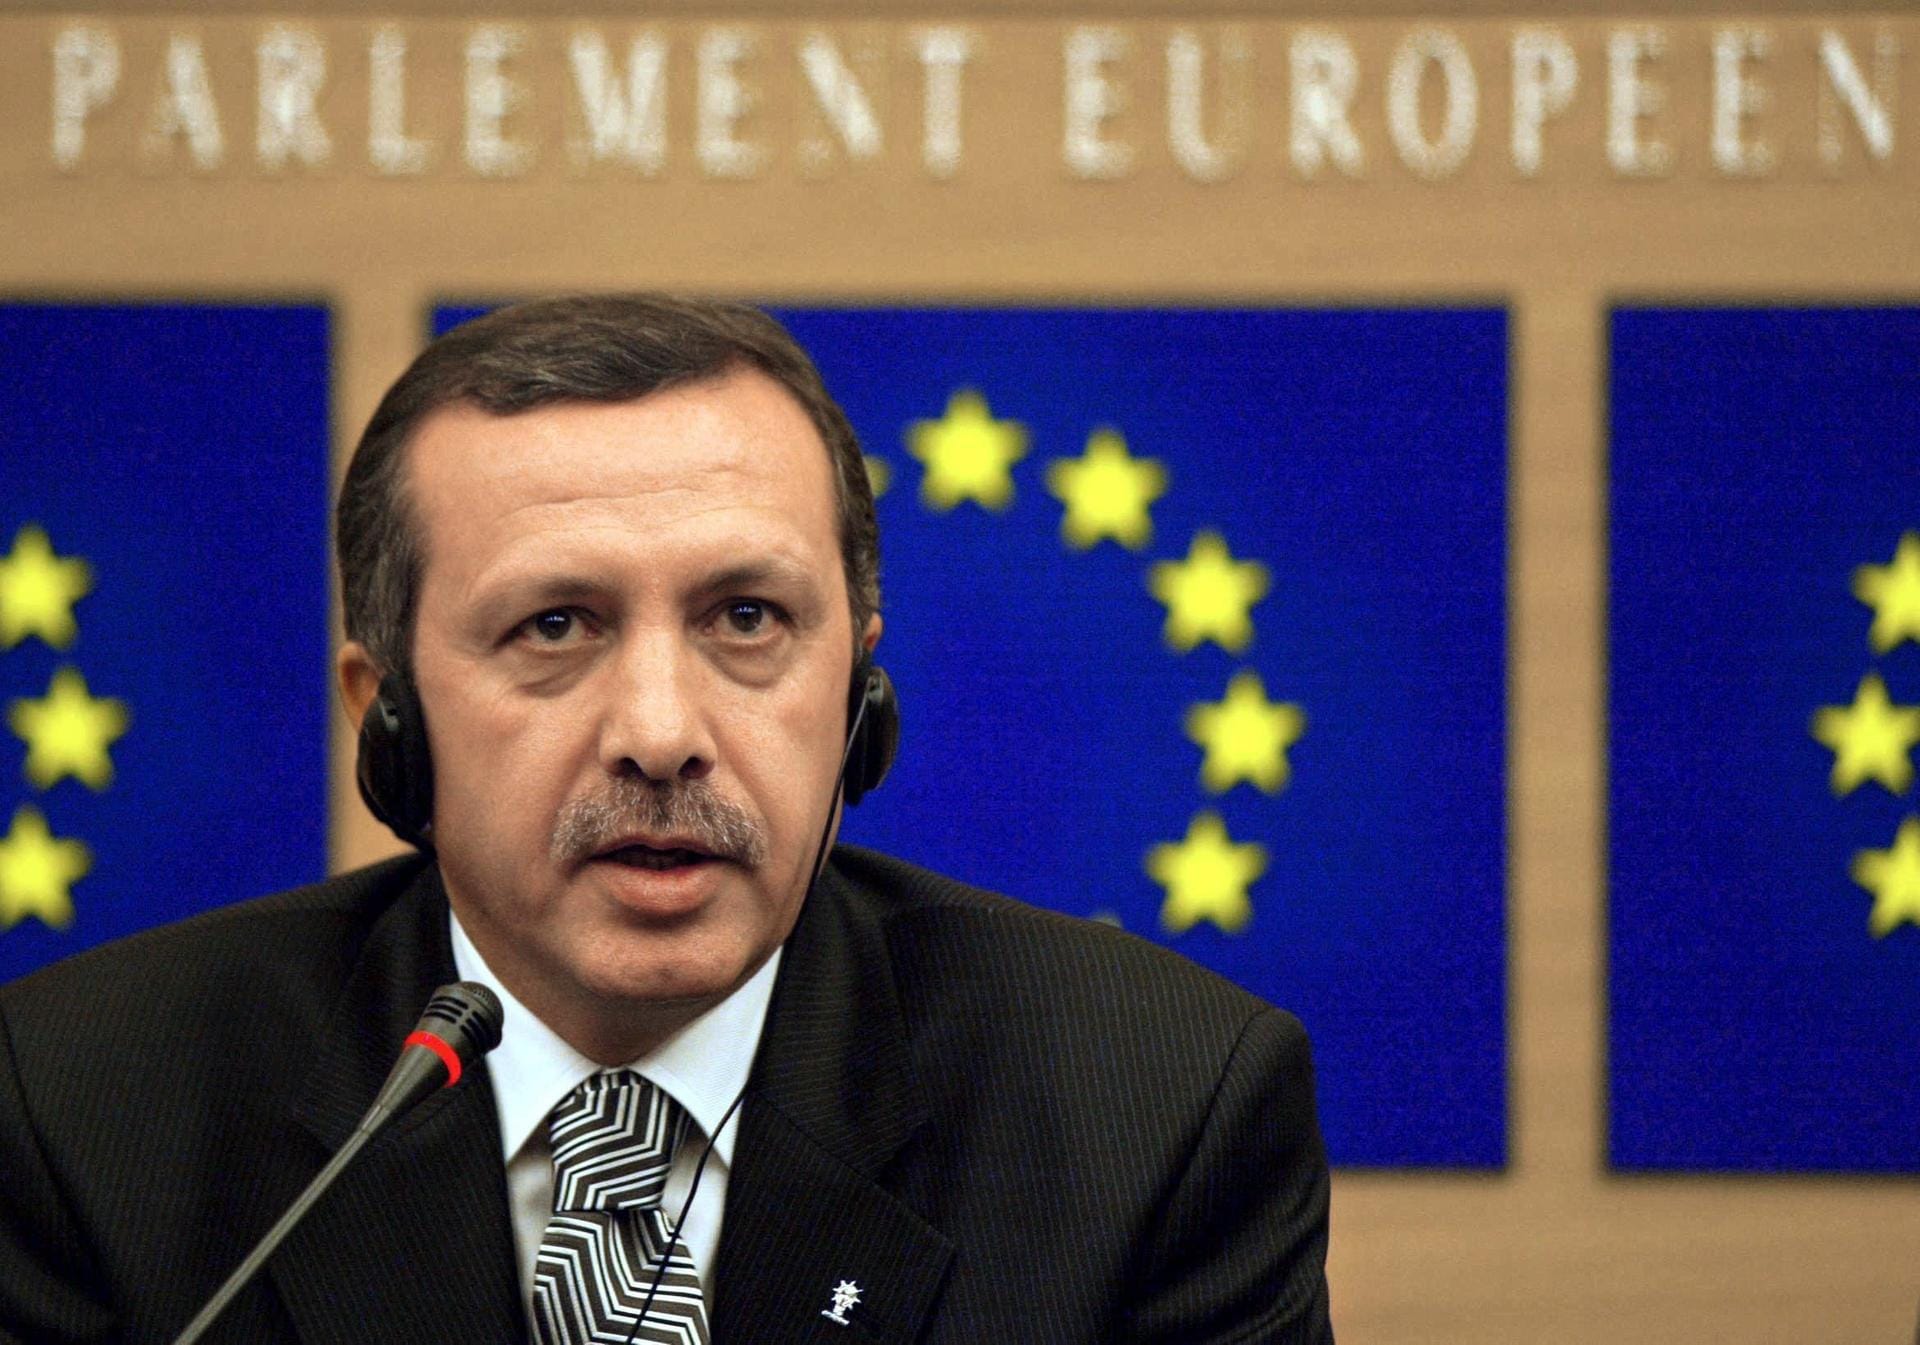 Auch international war Erdogan Hoffnungsträger. Er begann den Friedensprozess mit den Kurden in der Türkei, warb für einen türkischen EU-Beitritt und wurde zum Europäer des Jahres gewählt.